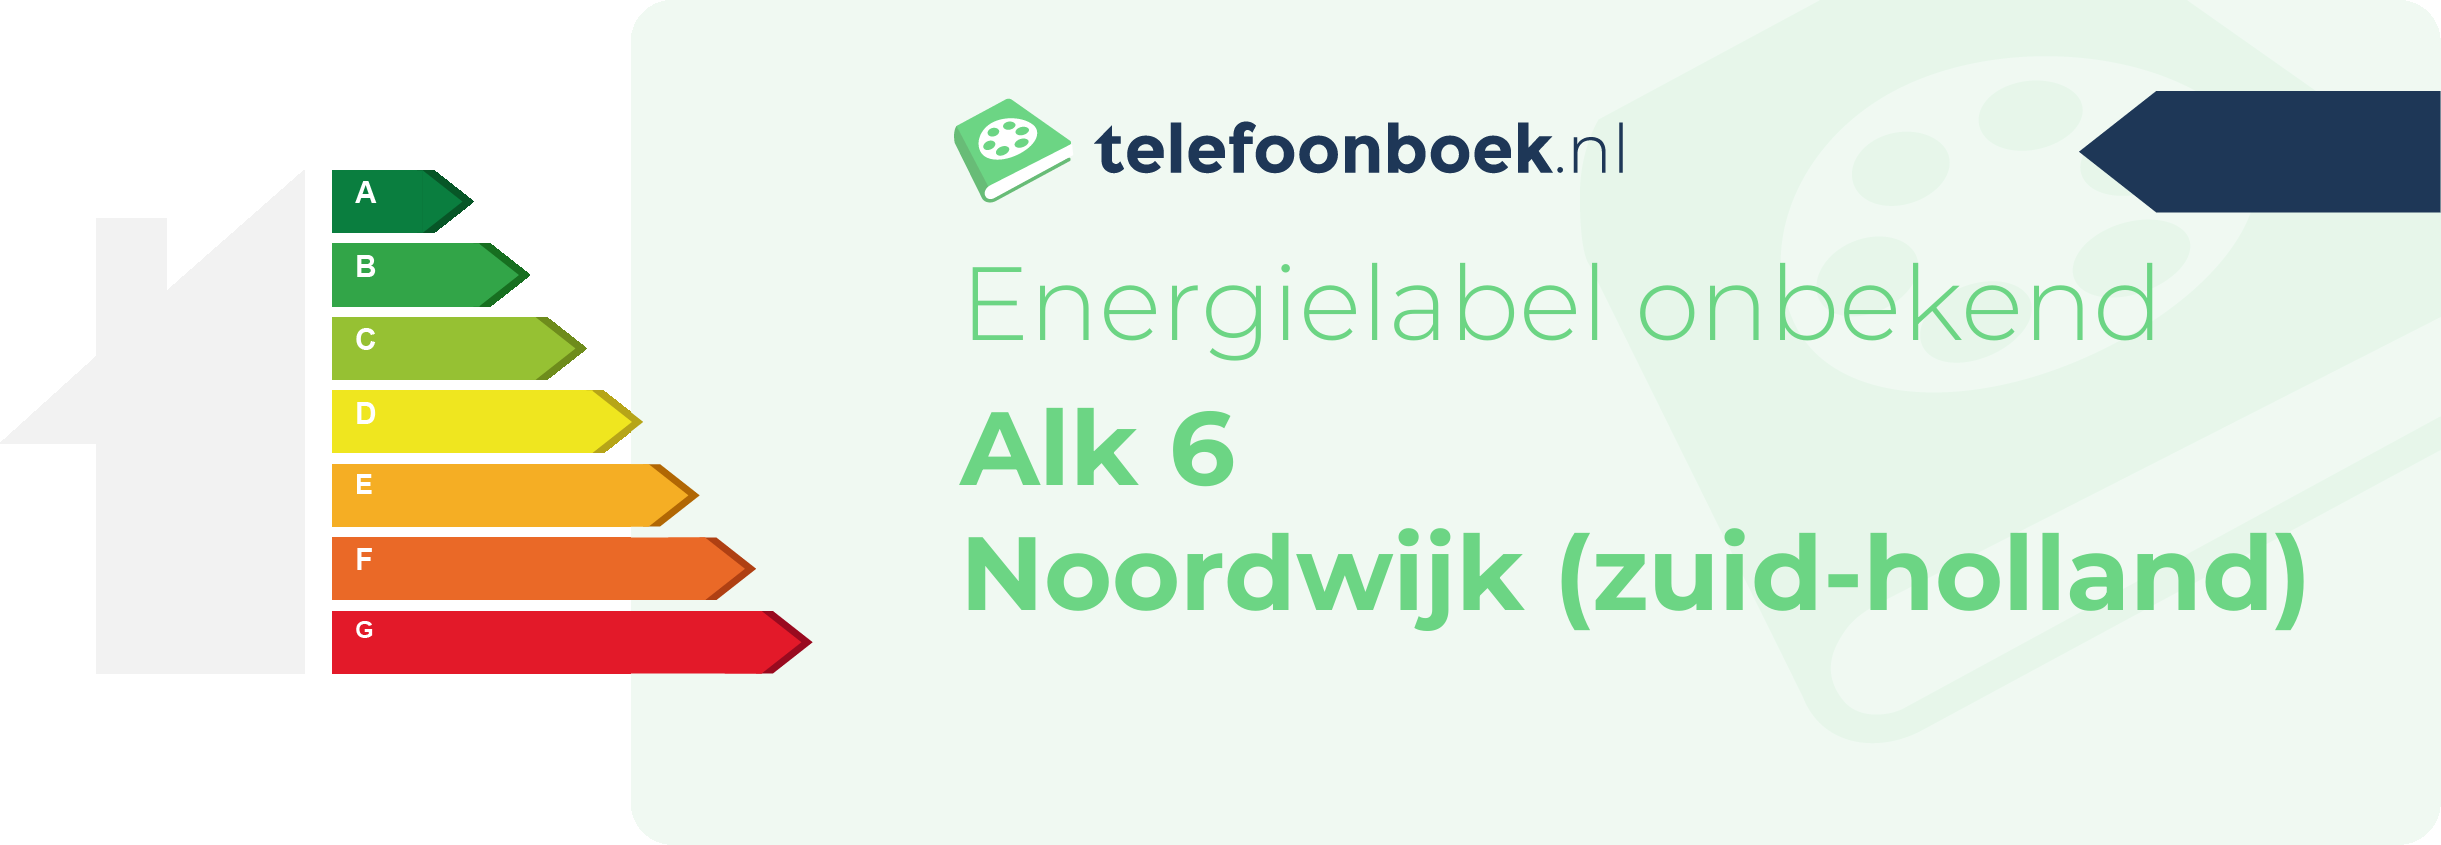 Energielabel Alk 6 Noordwijk (Zuid-Holland)